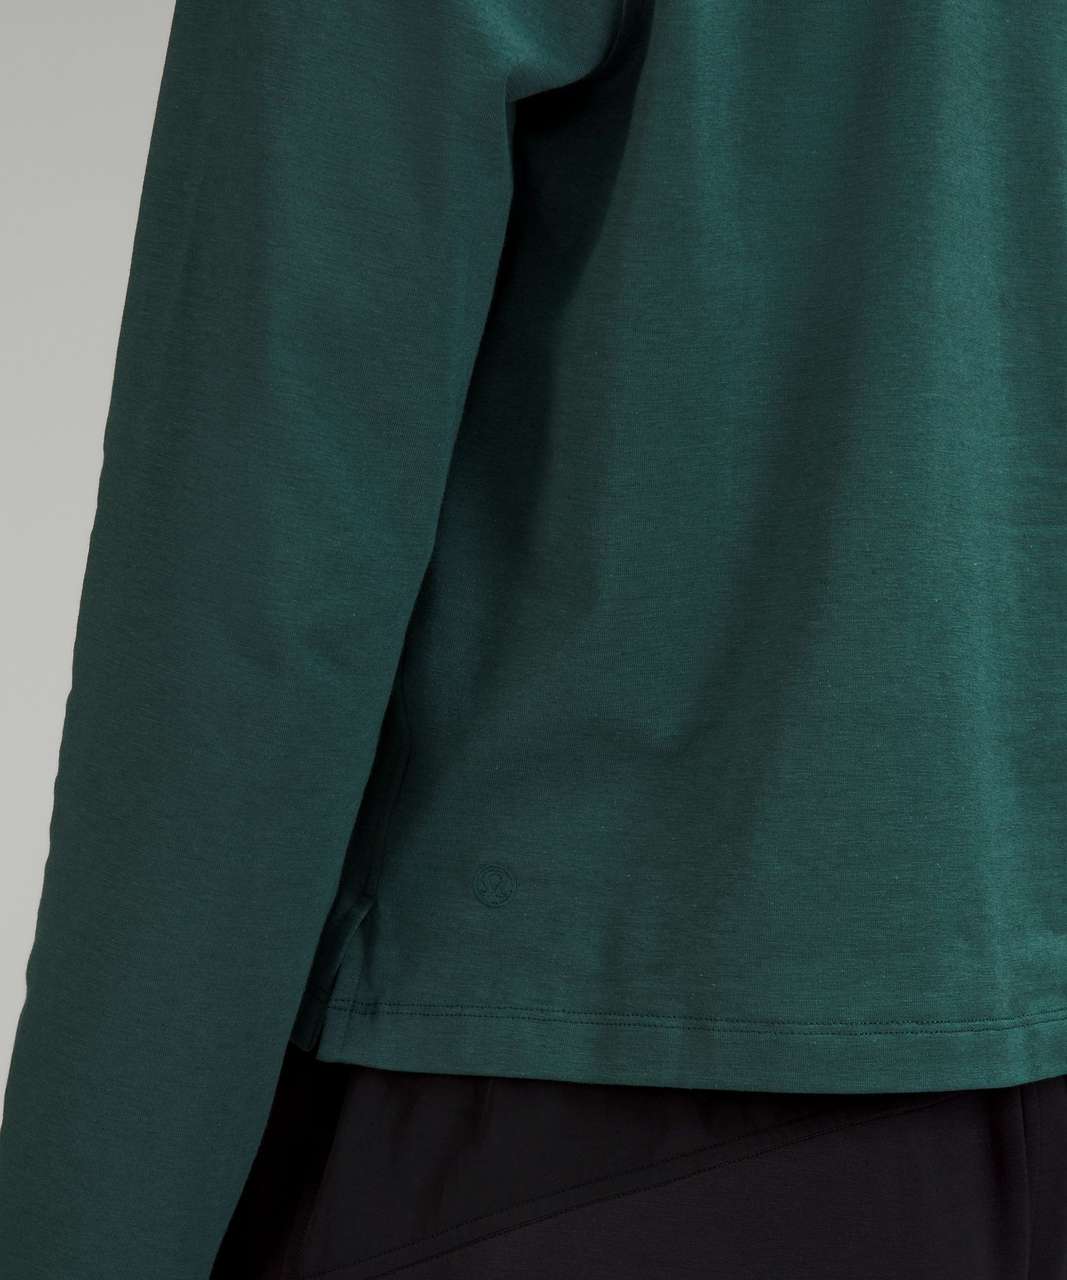 Lululemon Classic-Fit Cotton-Blend Long Sleeve Shirt - Green Jasper